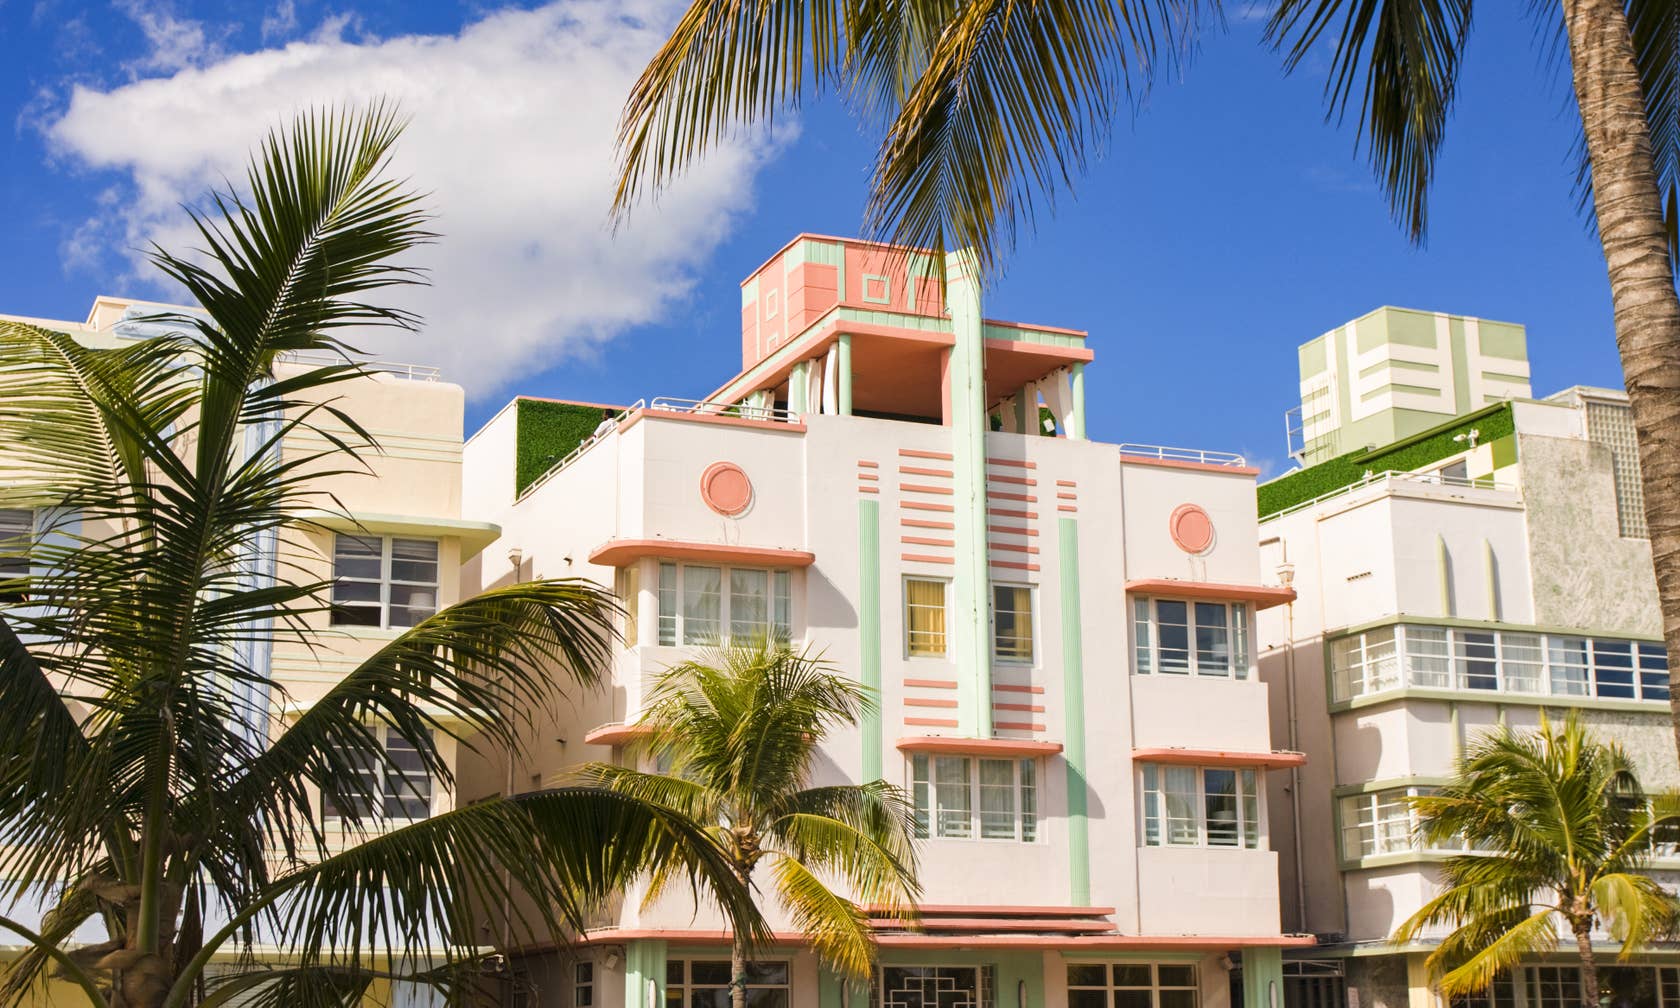 South Beach, Miami Beach Beachfront Home Rentals - Miami Beach, FL | Airbnb